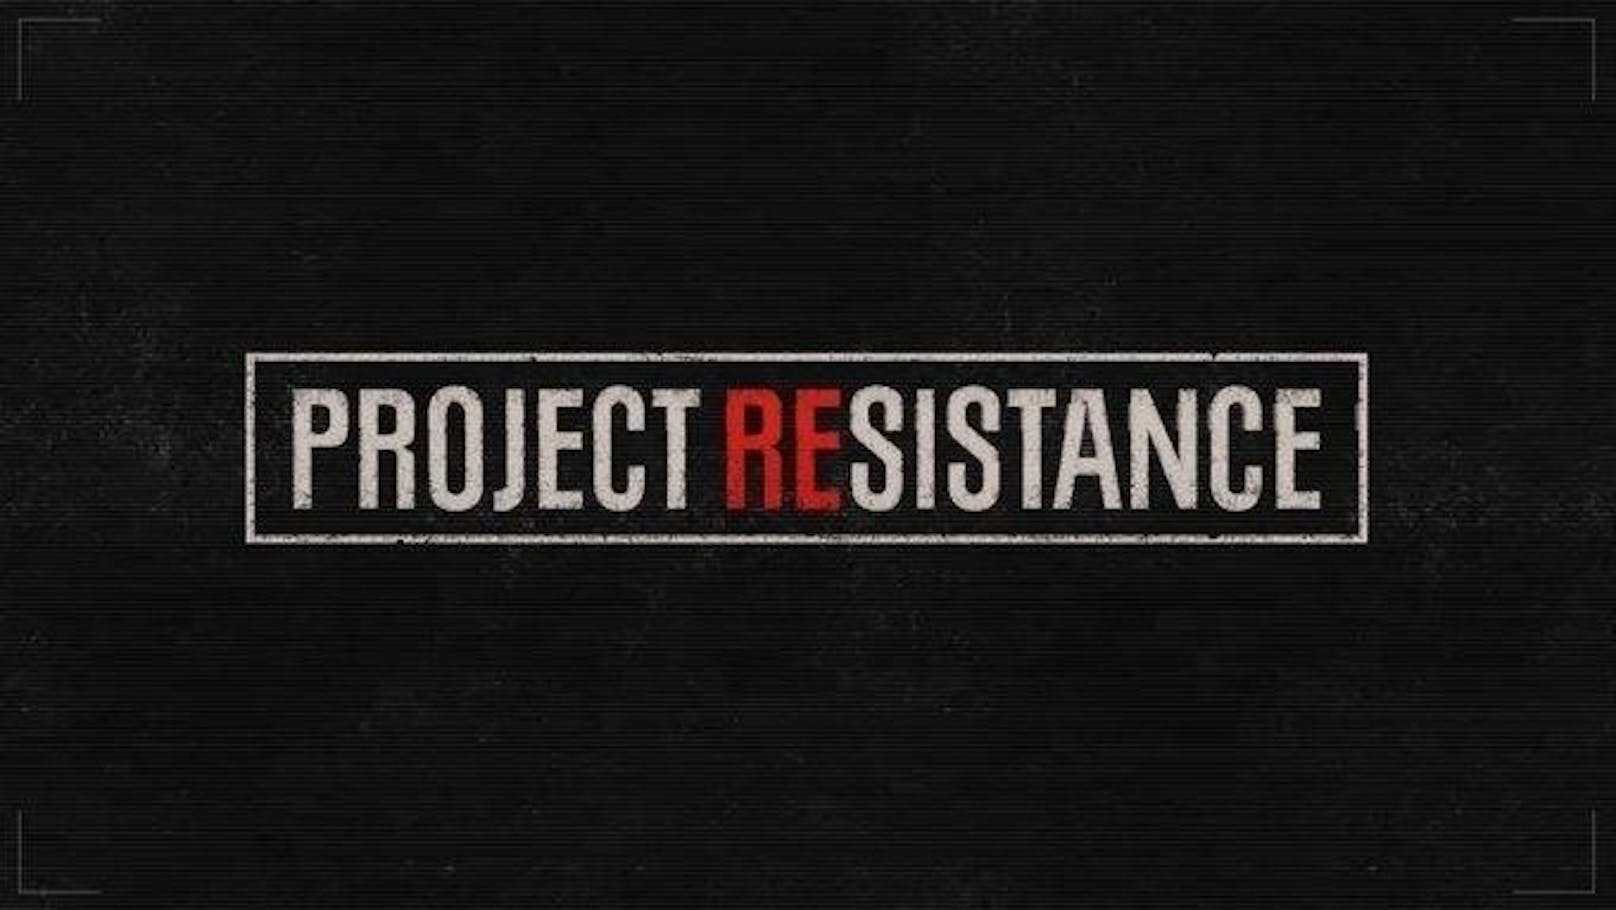 <b>29. August 2019:</b> Capcom teasert ein neues "Resident Evil" mit dem Codenamen "Project Resistance" an. Weitere Details gibt es aber kaum. Laut der Teaser-Homepage wird es das Spiel jedenfalls für PC über Steam geben. Unbekannt ist, ob es sich um Resident Evil 8 oder ein Serien-Spin-off handeln wird. Neue Infos soll es aber bereits am 9. September geben, denn will Capcom Gameplay aus dem neuen Spiel auf seinem Youtube-Kanal zeigen. Außerdem soll eine spielbare Version von "Project Resistance" schon auf der Tokyo Game Shhow 2019 am 12. September präsentiert werden.